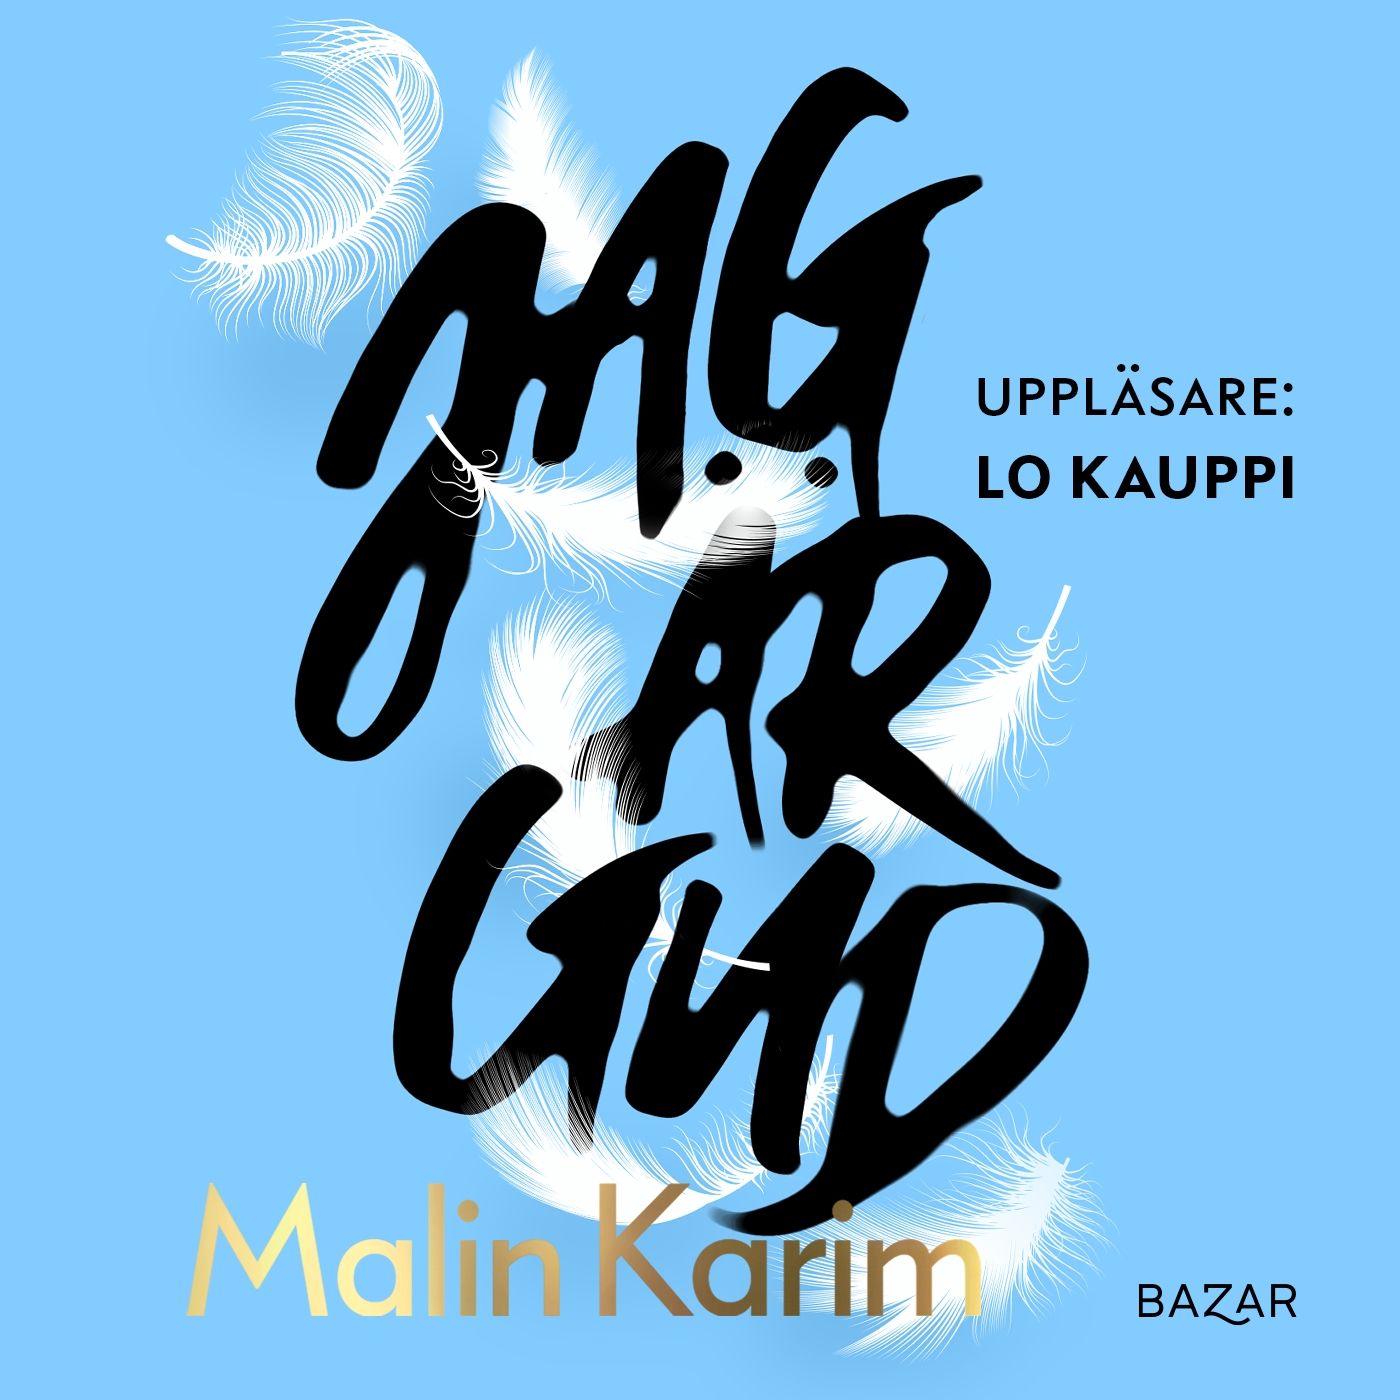 Jag är Gud, lydbog af Malin Karim